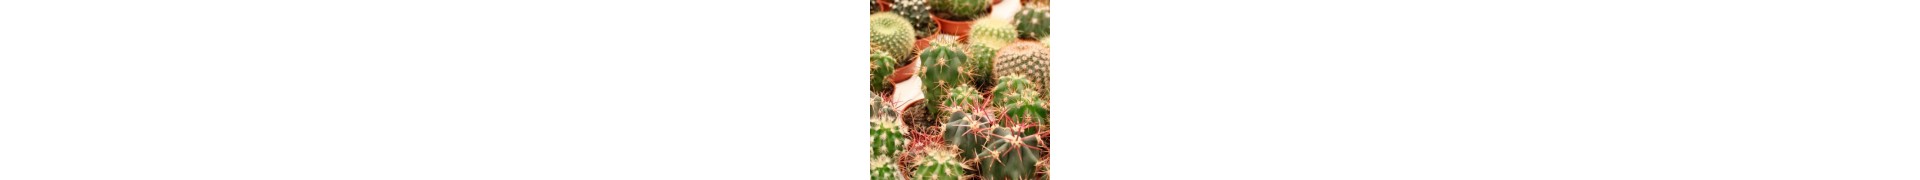 Gran variedad de cactus y plantas suculentas